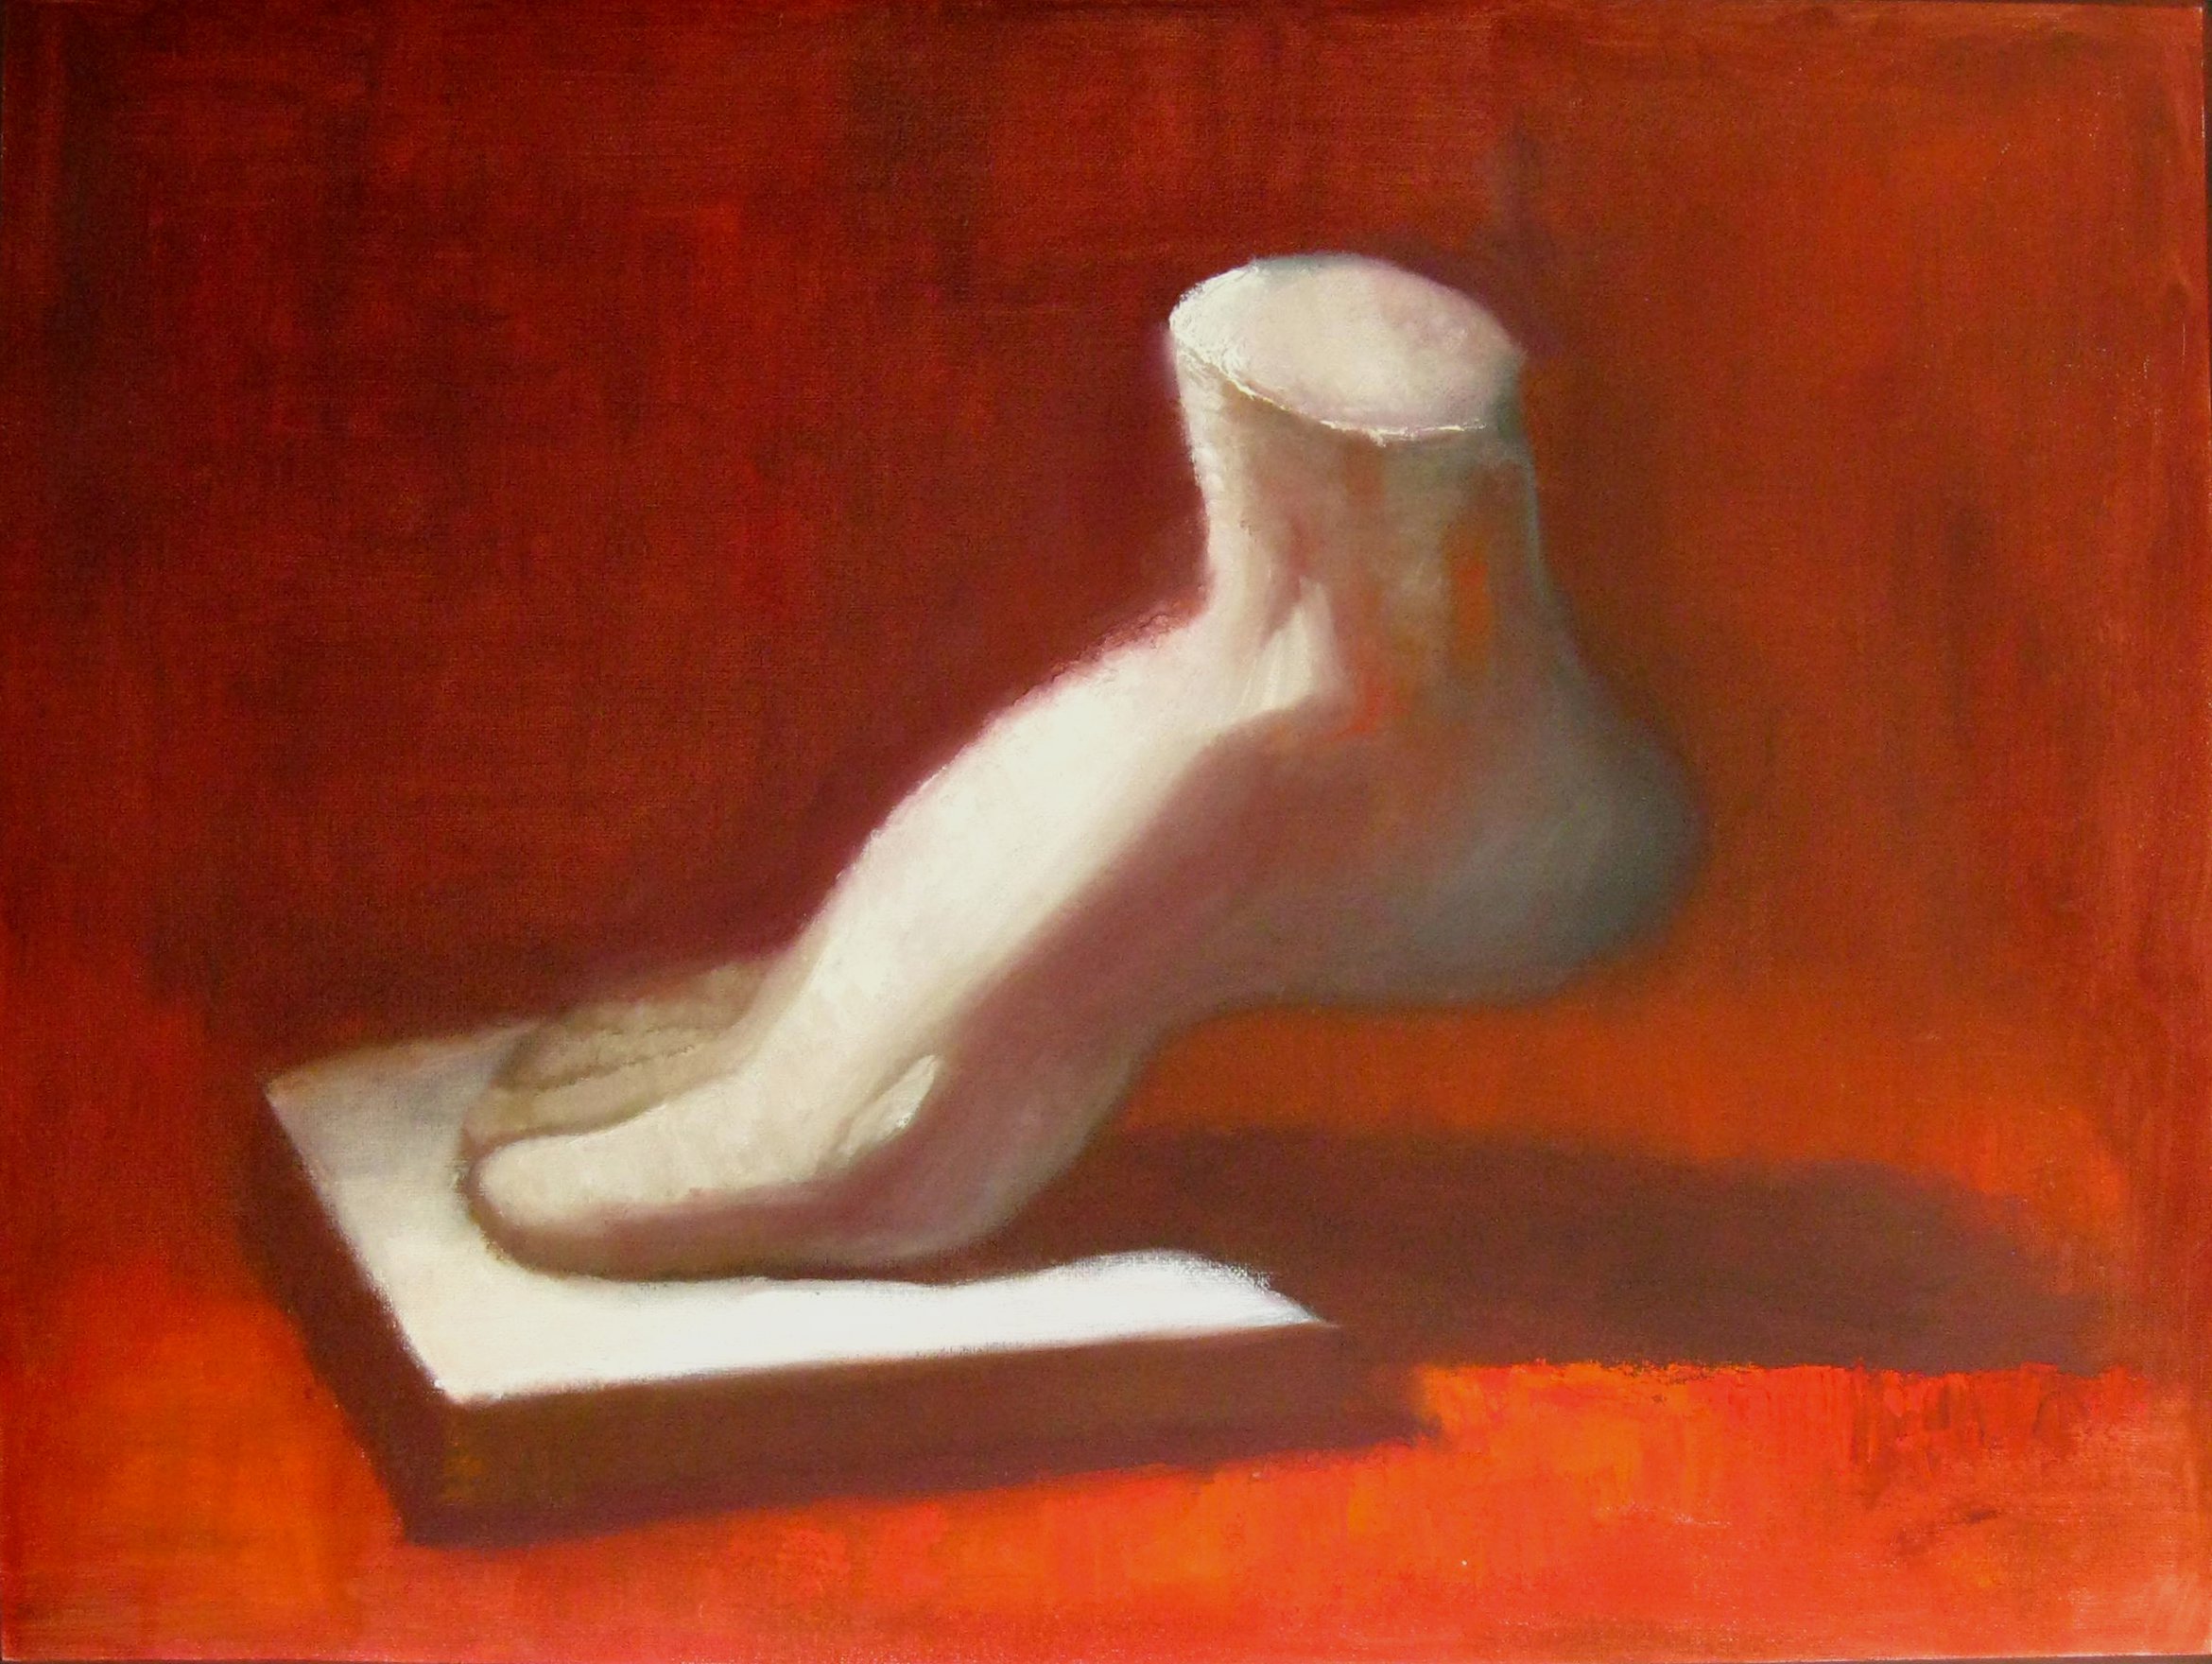 plaster foot